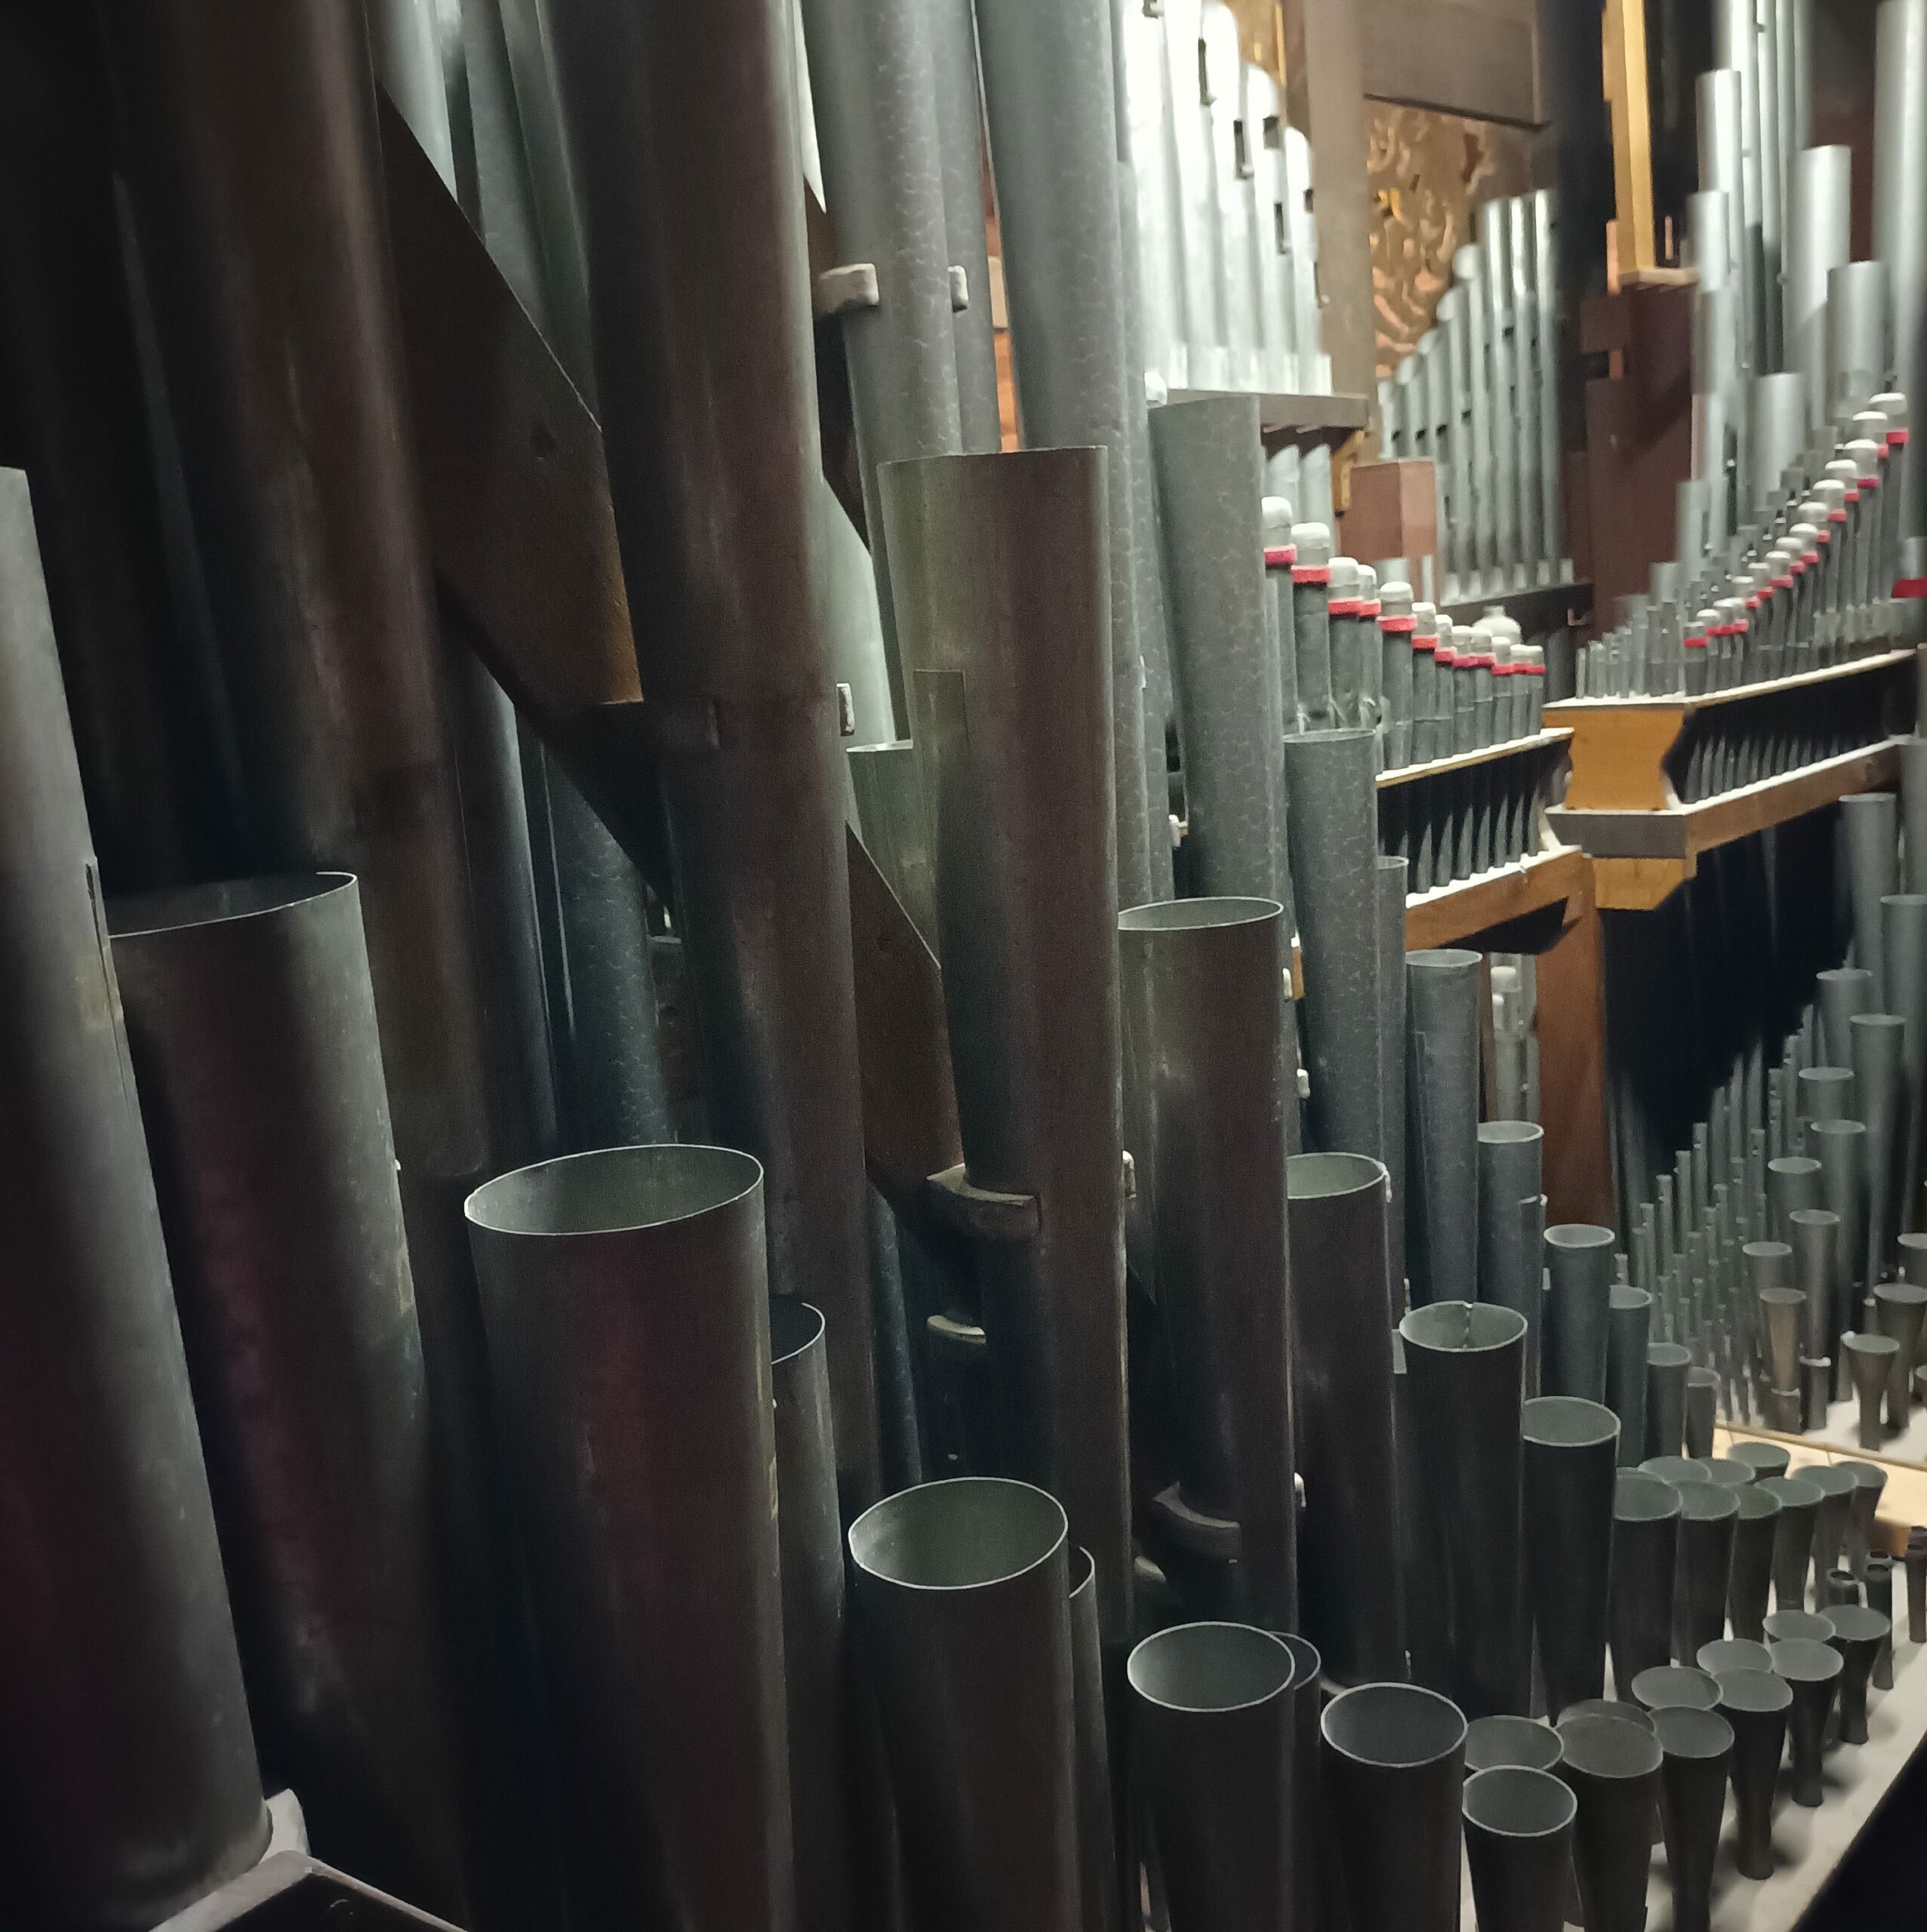 L'Orgue de Notre-Dame Cap Lihou Granville - Cet instrument unique